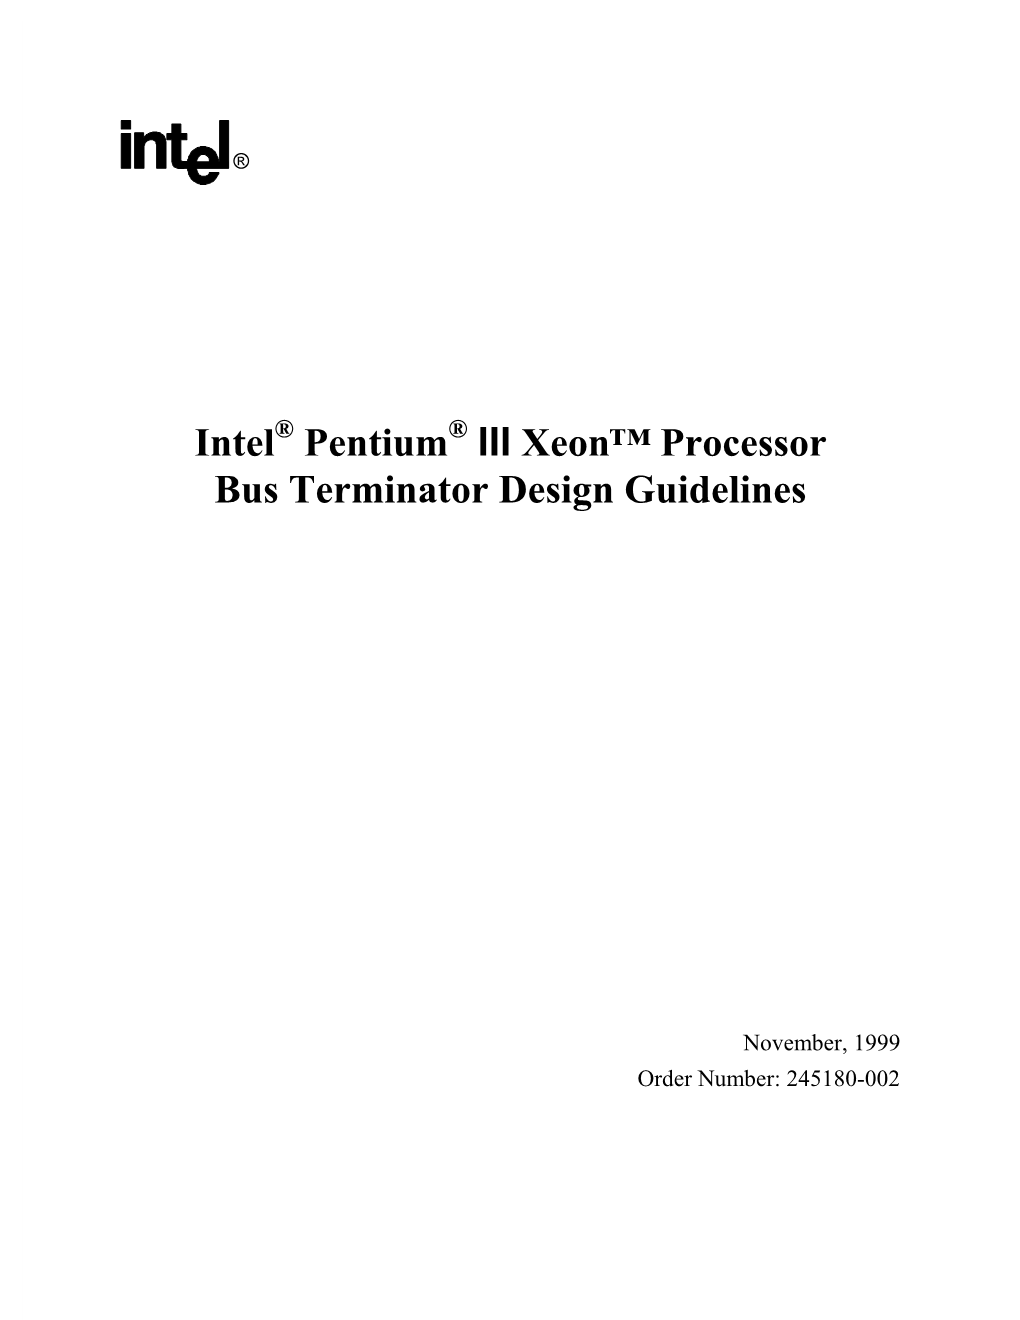 Intel Pentium III Xeon™ Processor Bus Terminator Design Guidelines